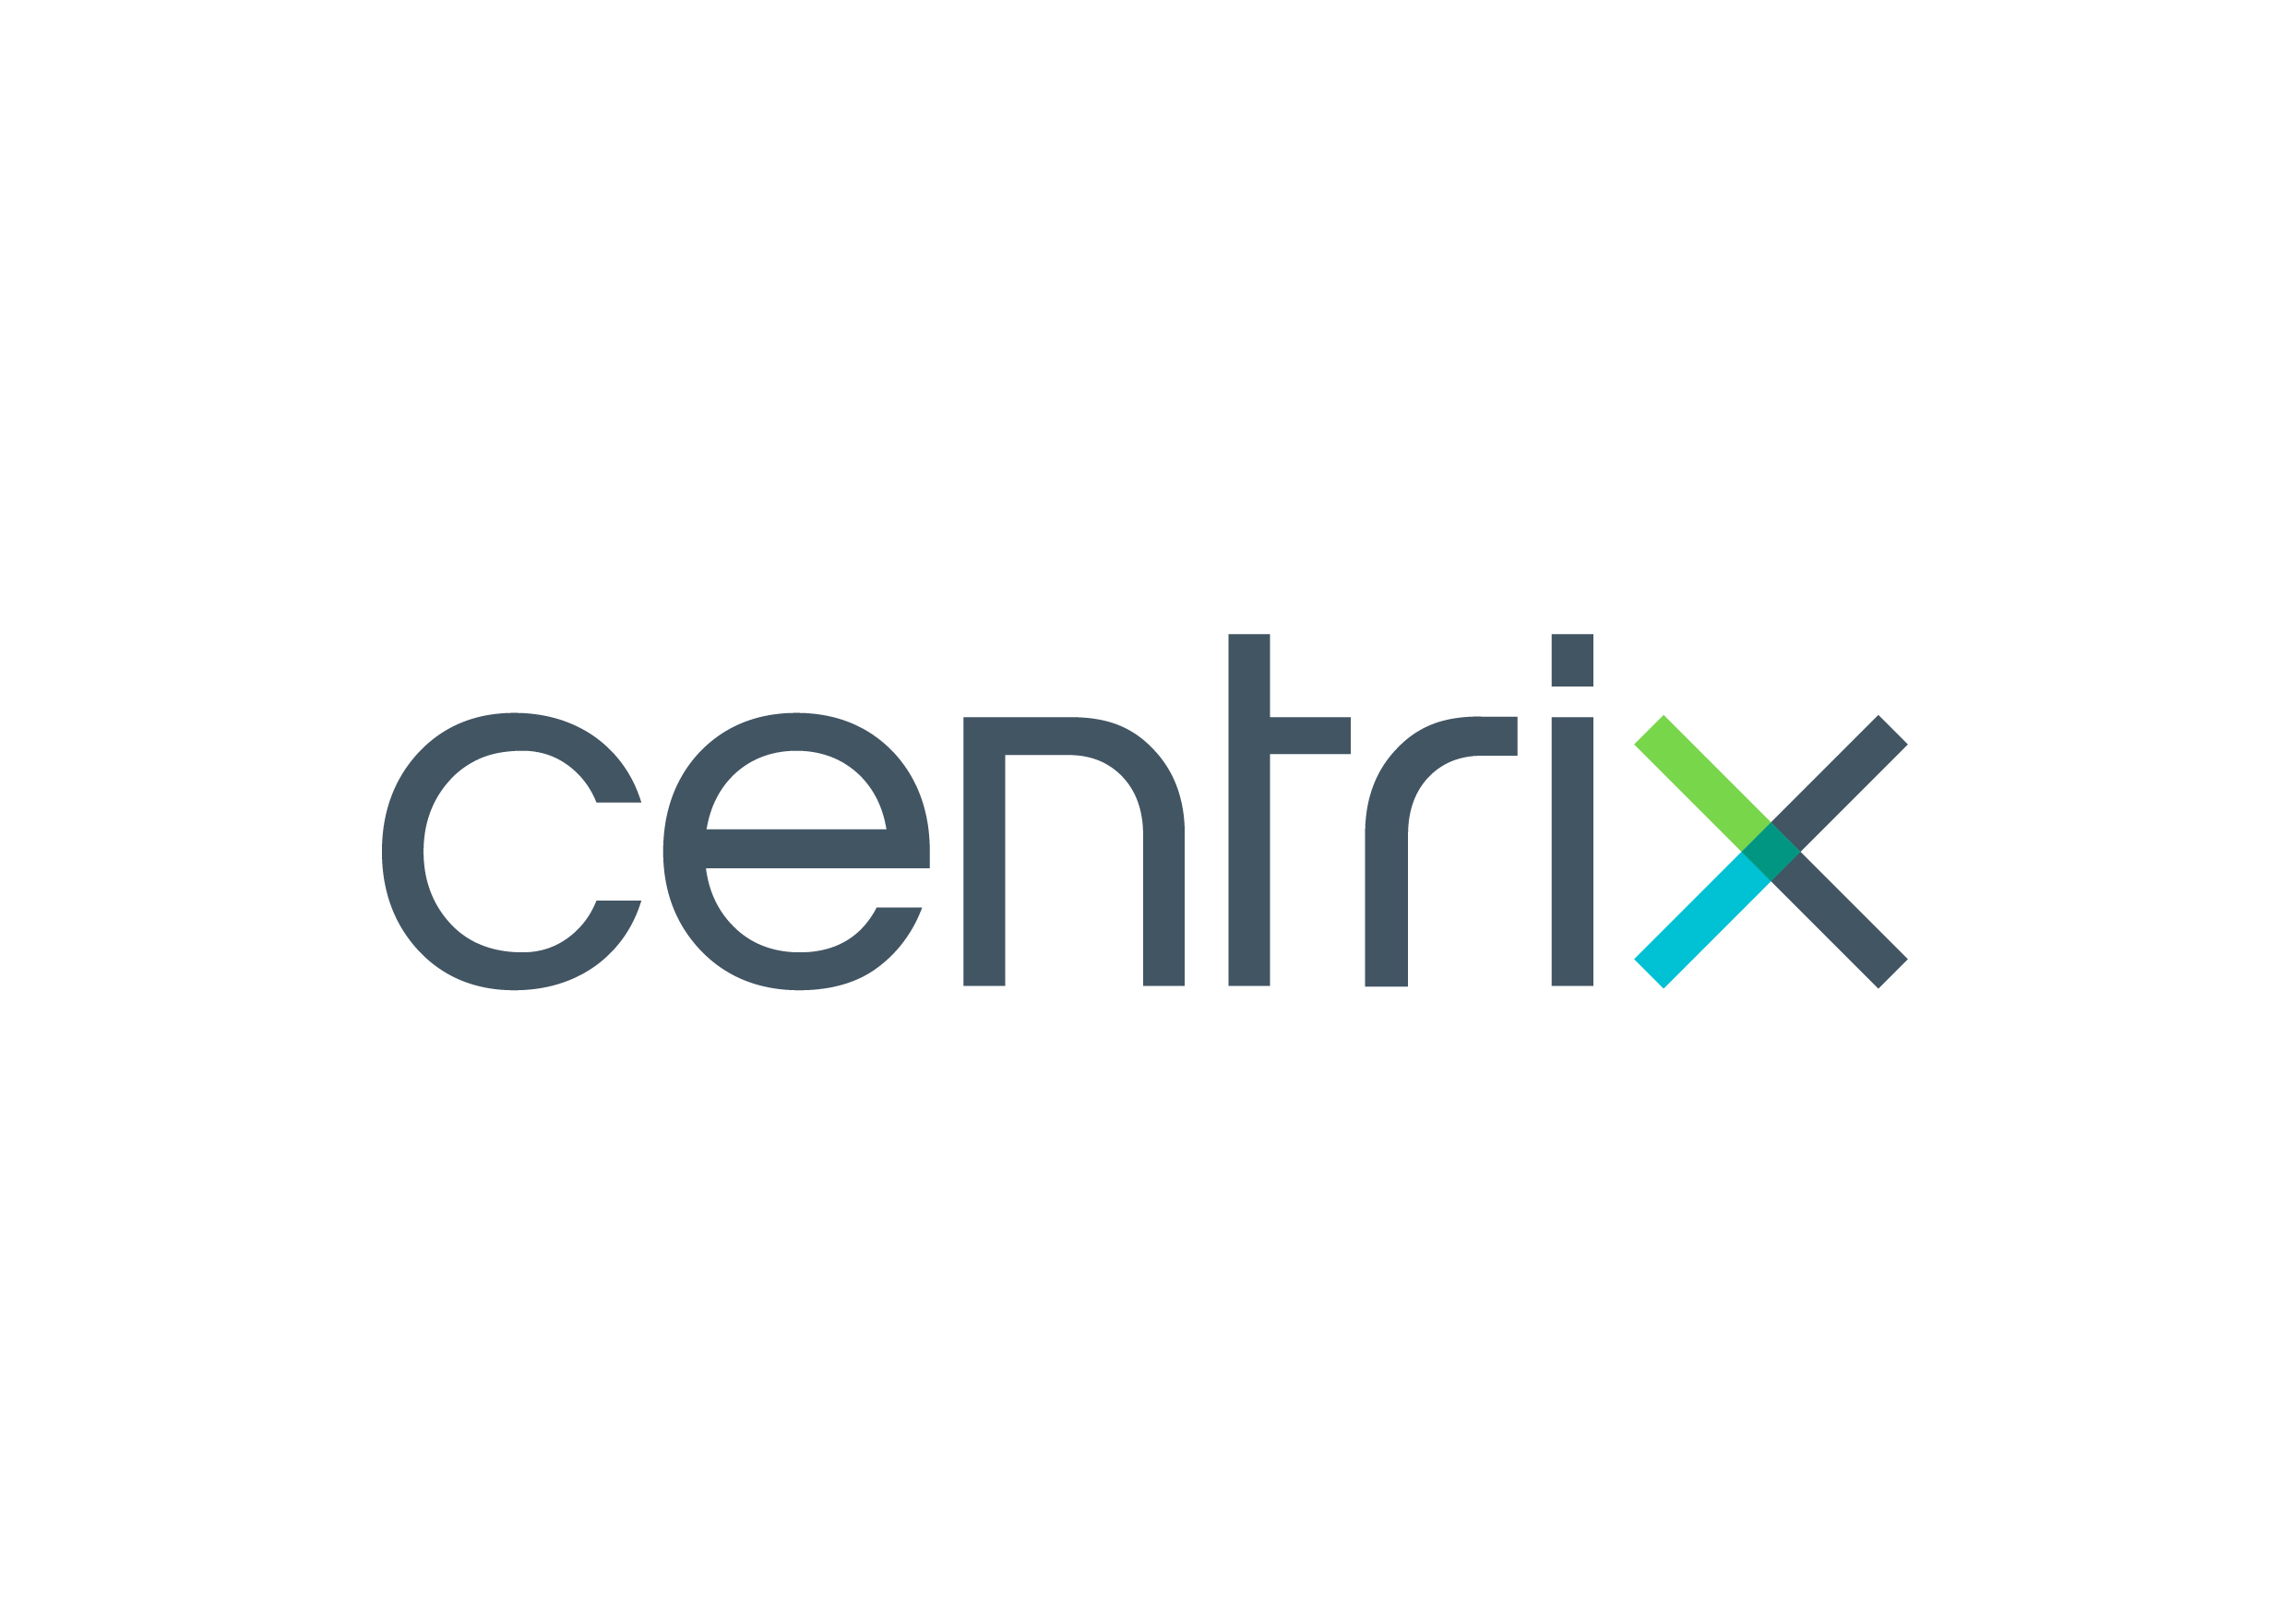 N.Y. Centrix Solutions Ltd